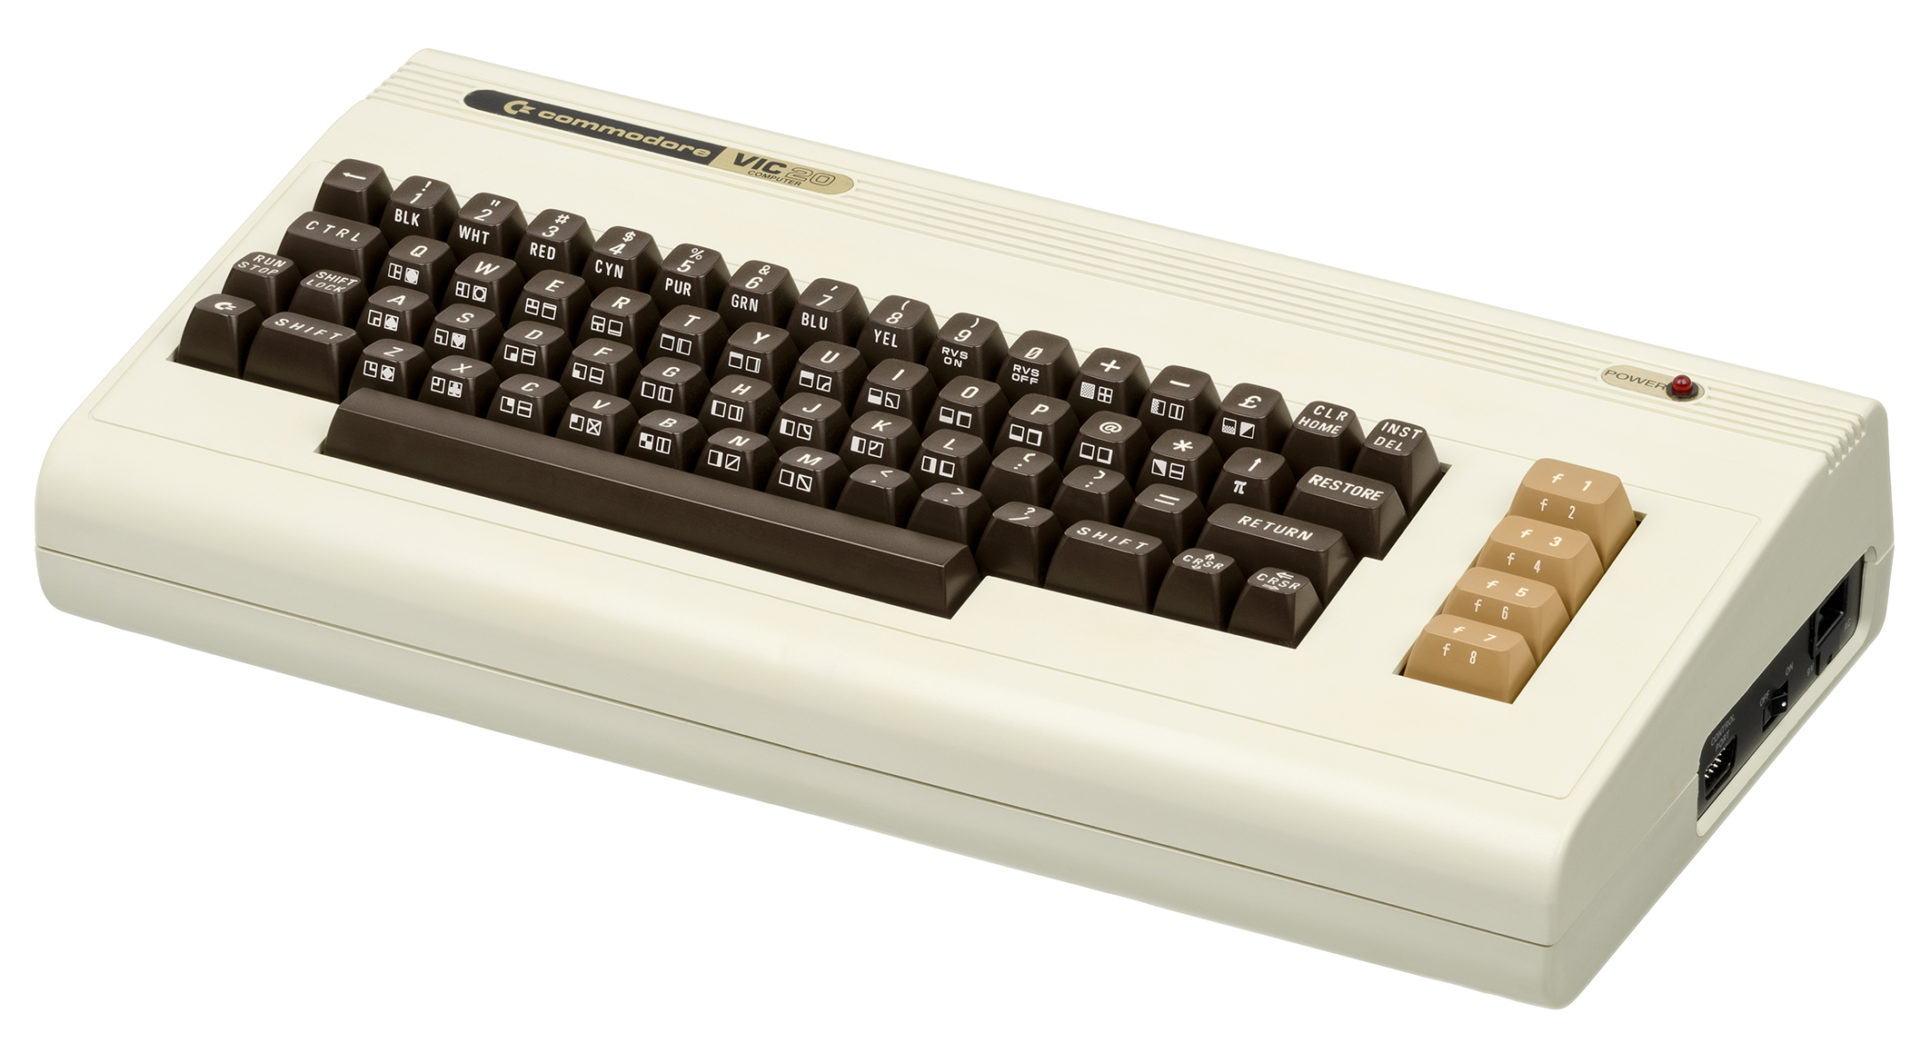 Commodore's VIC-20